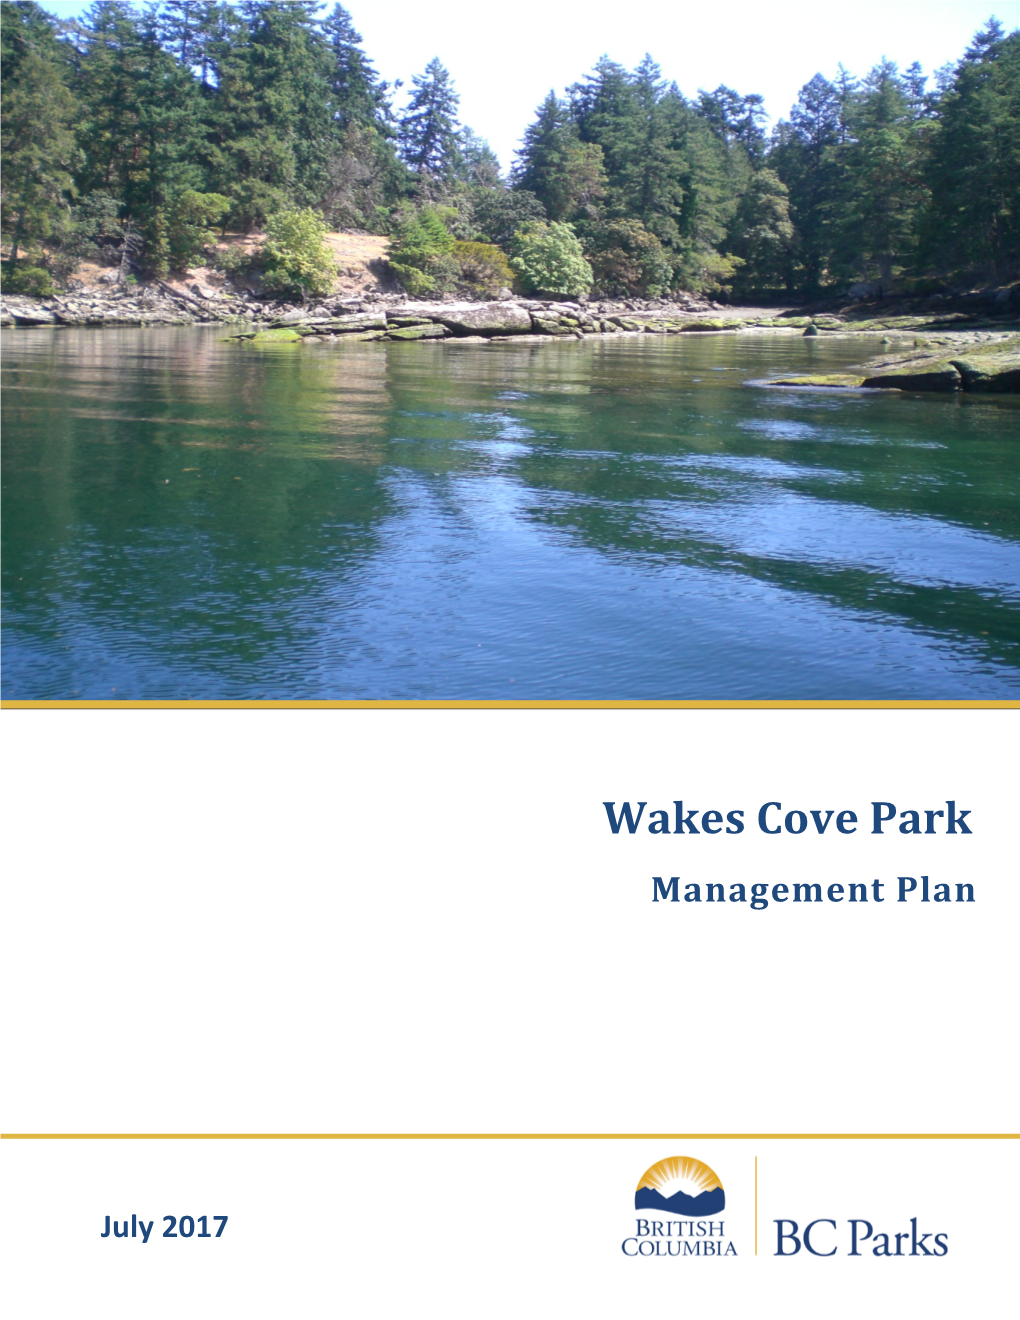 Wakes Cove Park Management Plan